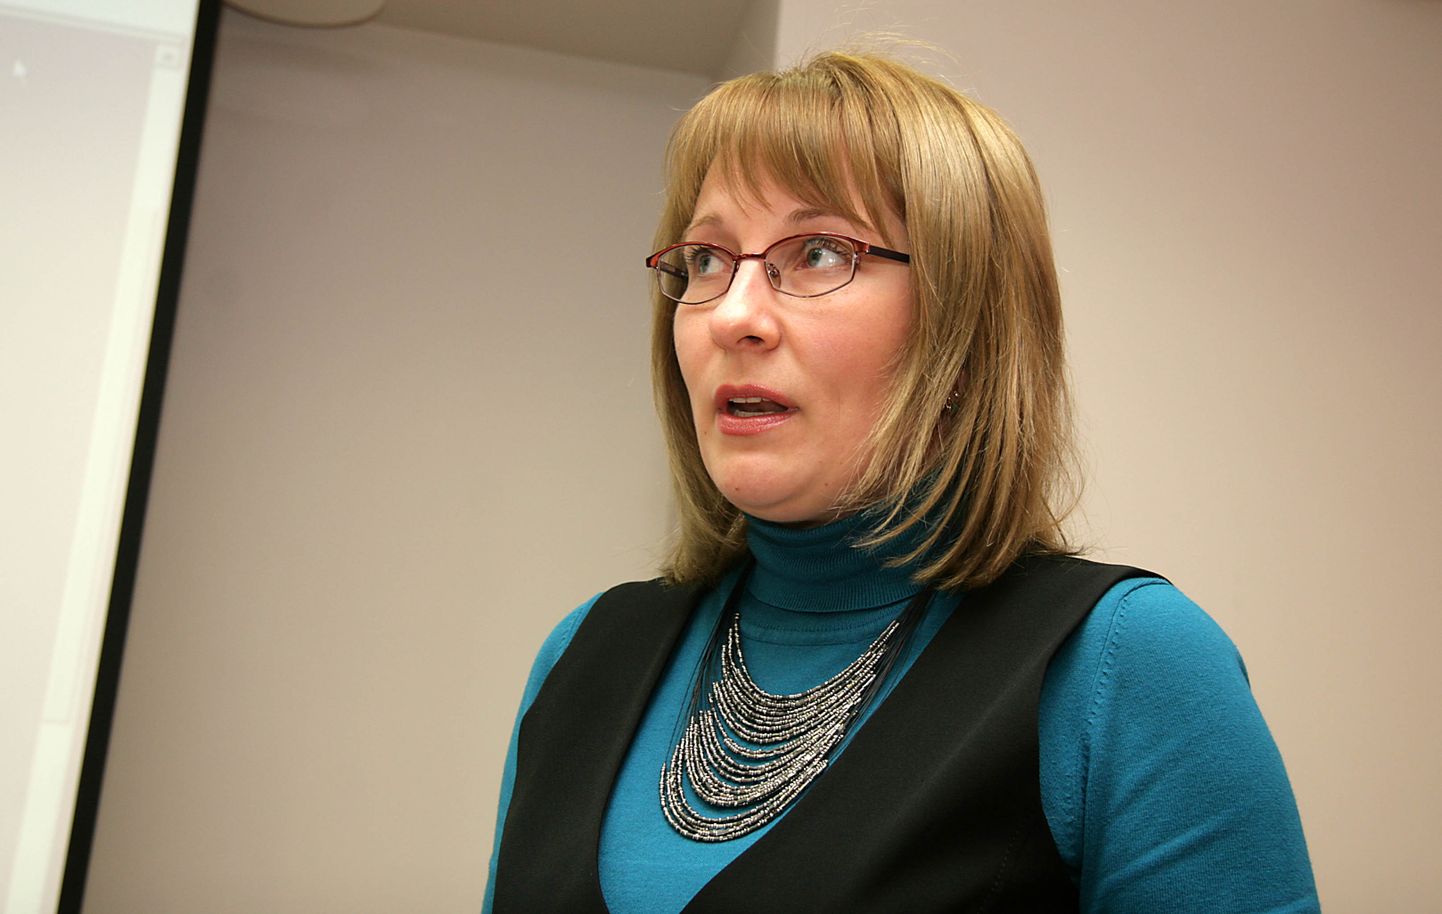 Ирина Путконен, выбранная прошлой весной директором Кохтла-Ярвеской госгимназии, объявила о своей отставке.